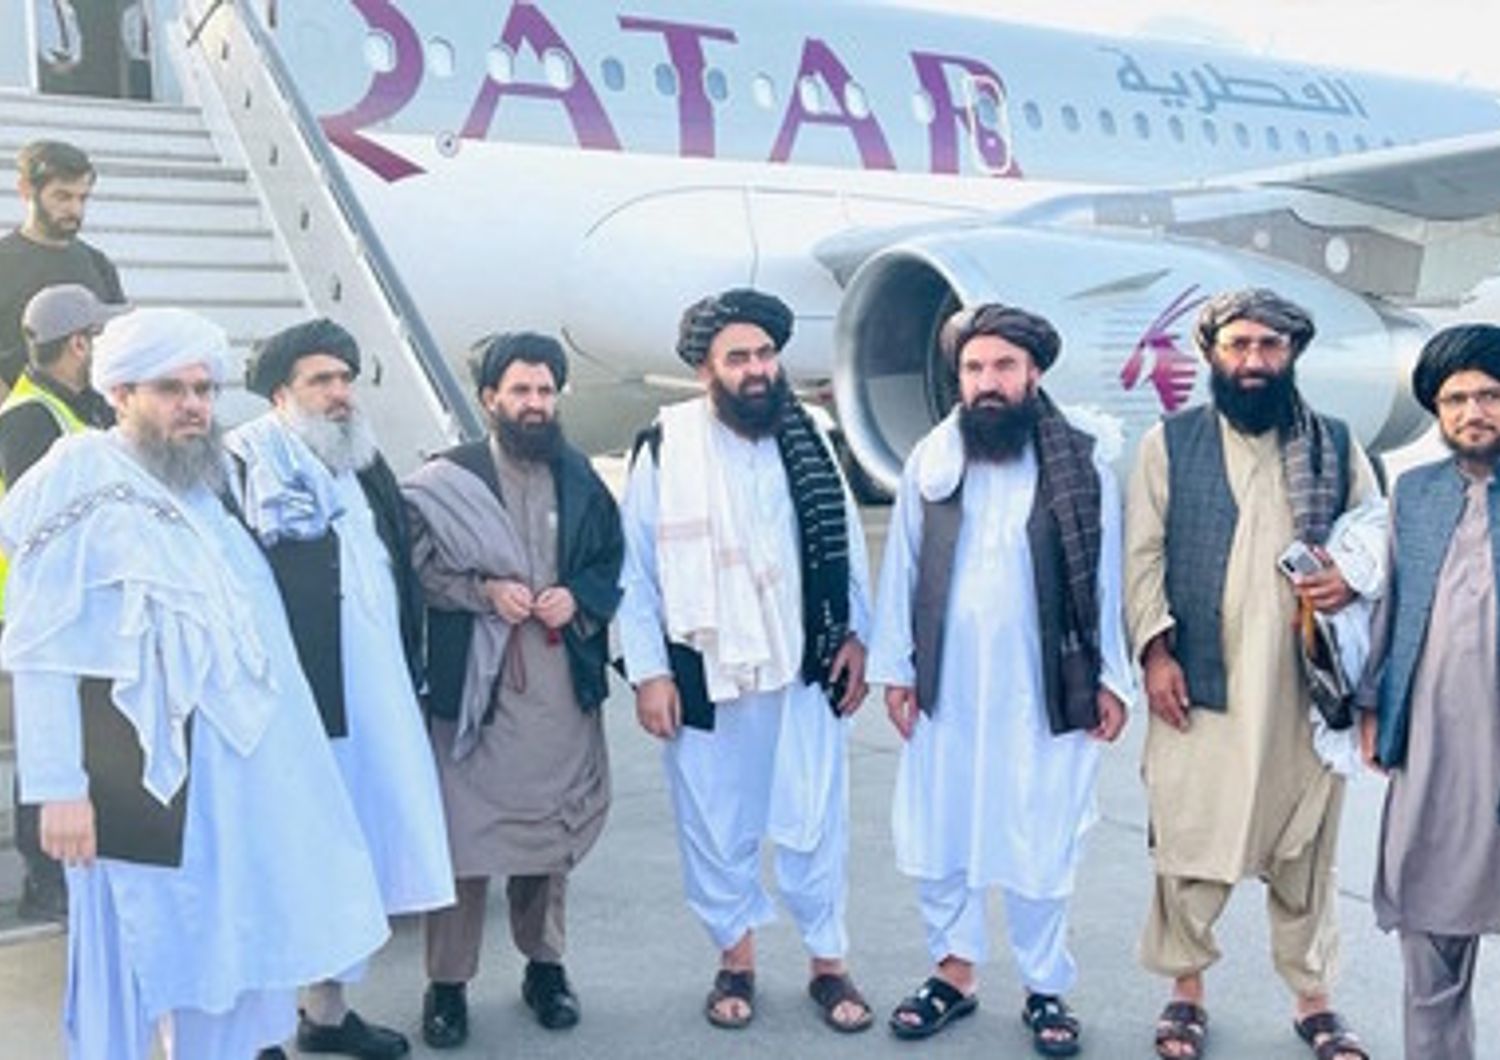 La delegazione di alto livello dei talebani all'arrivo a Doha